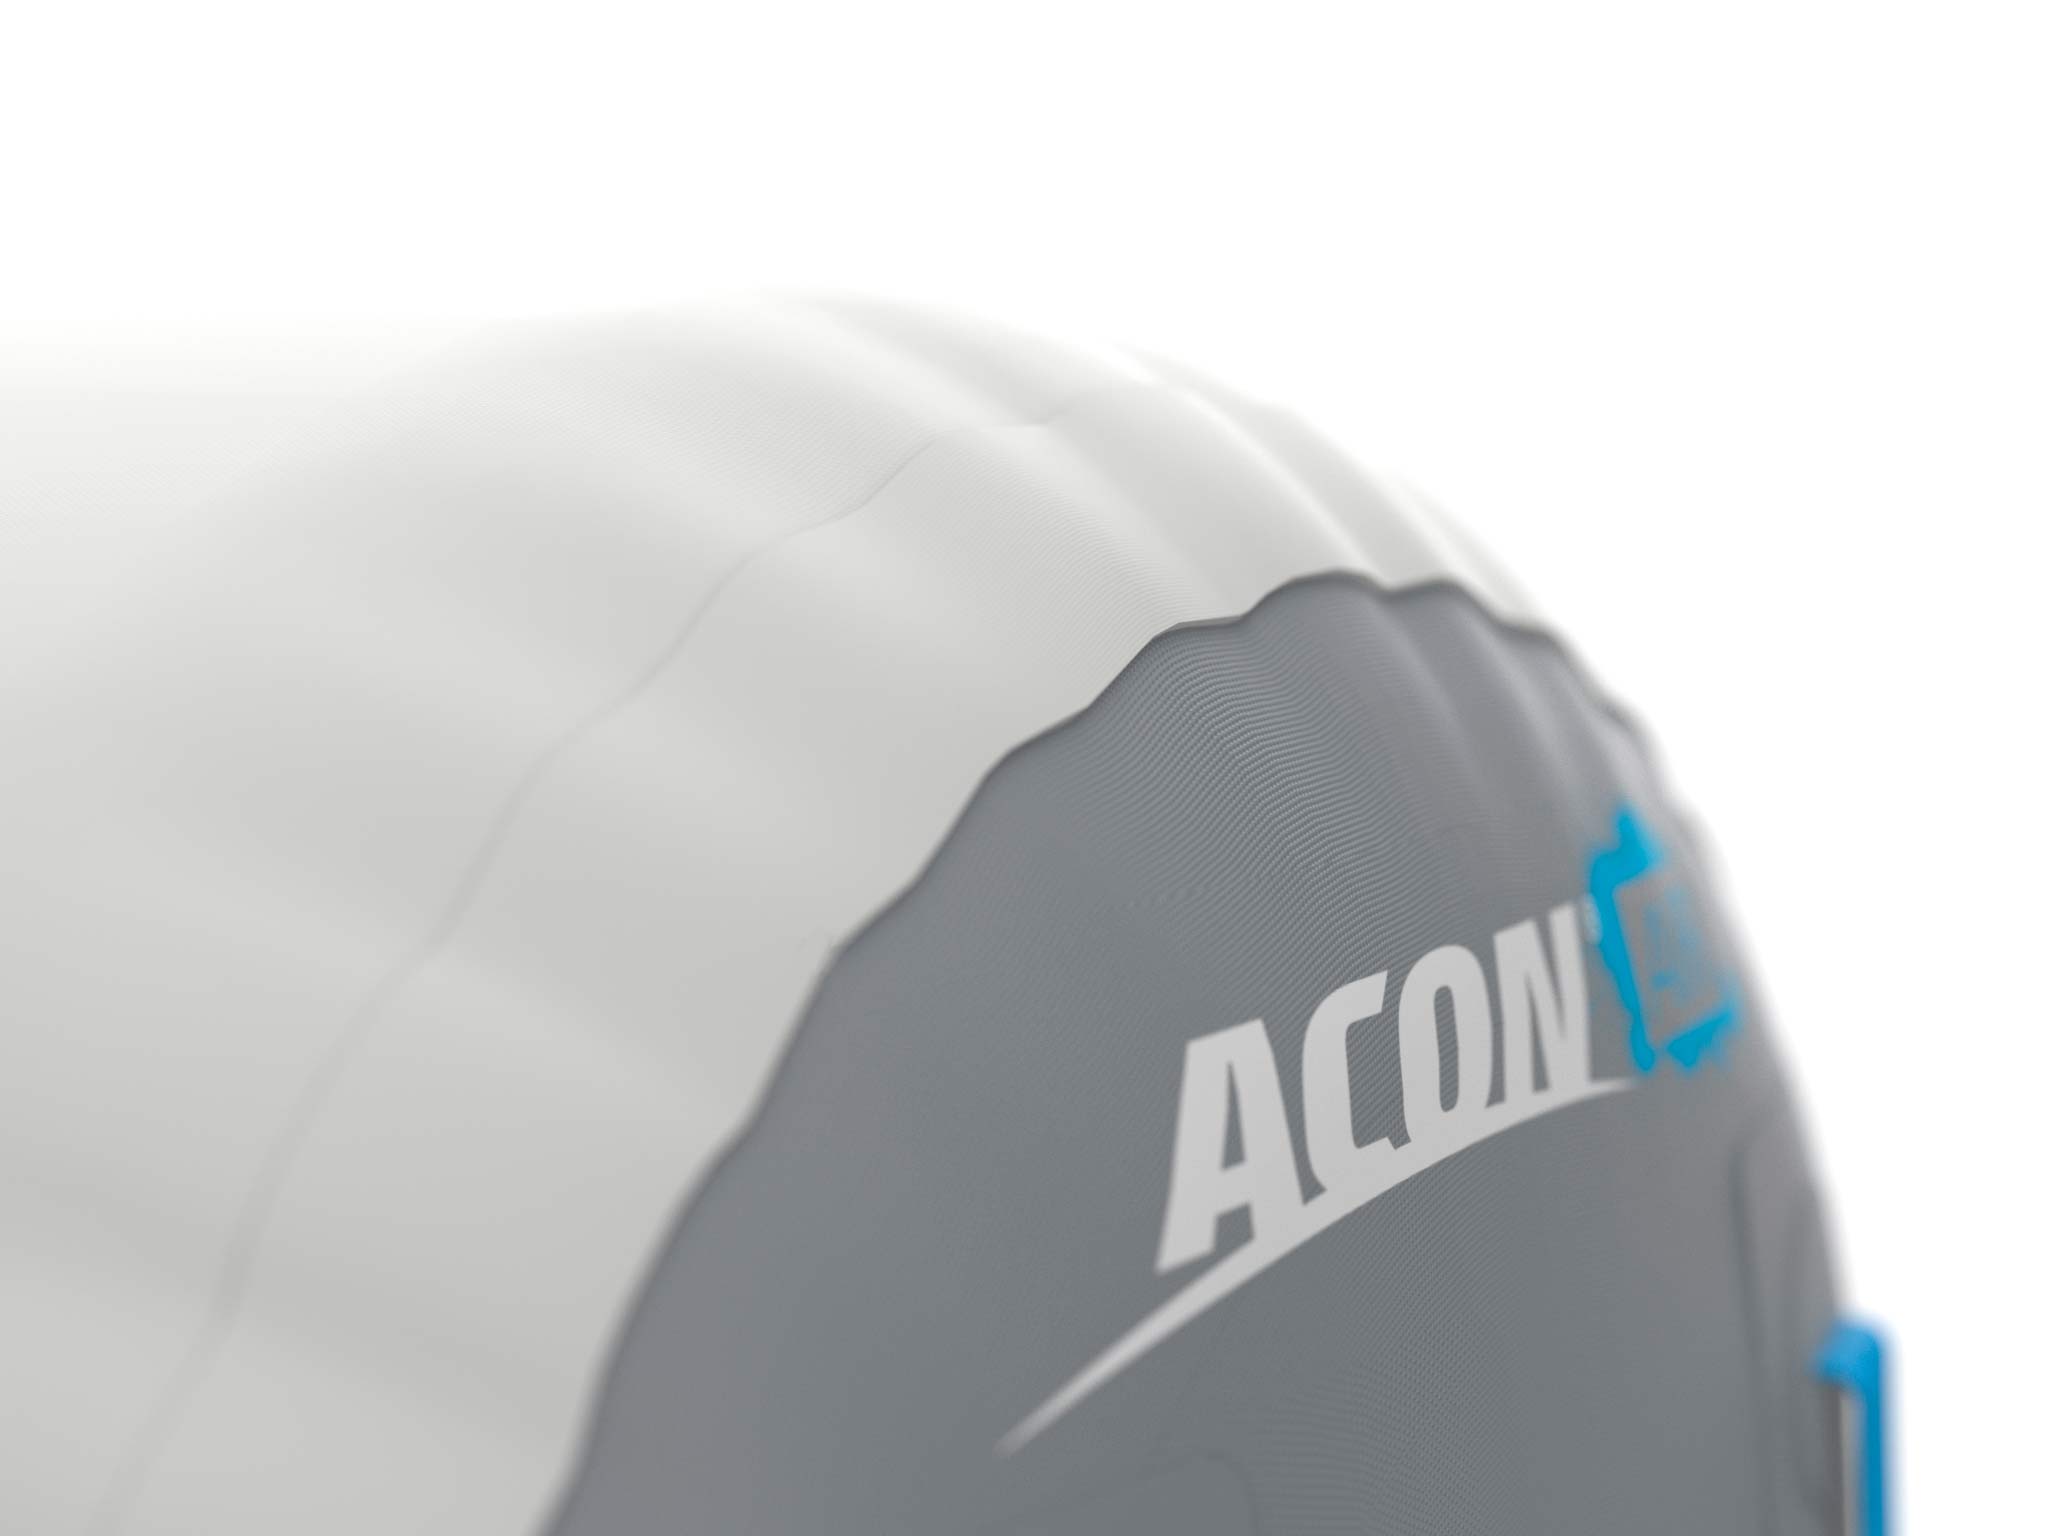 Airroll ACON 0,9 x 1,2 m - Tricks et gymnastique - Détails du logo ACON